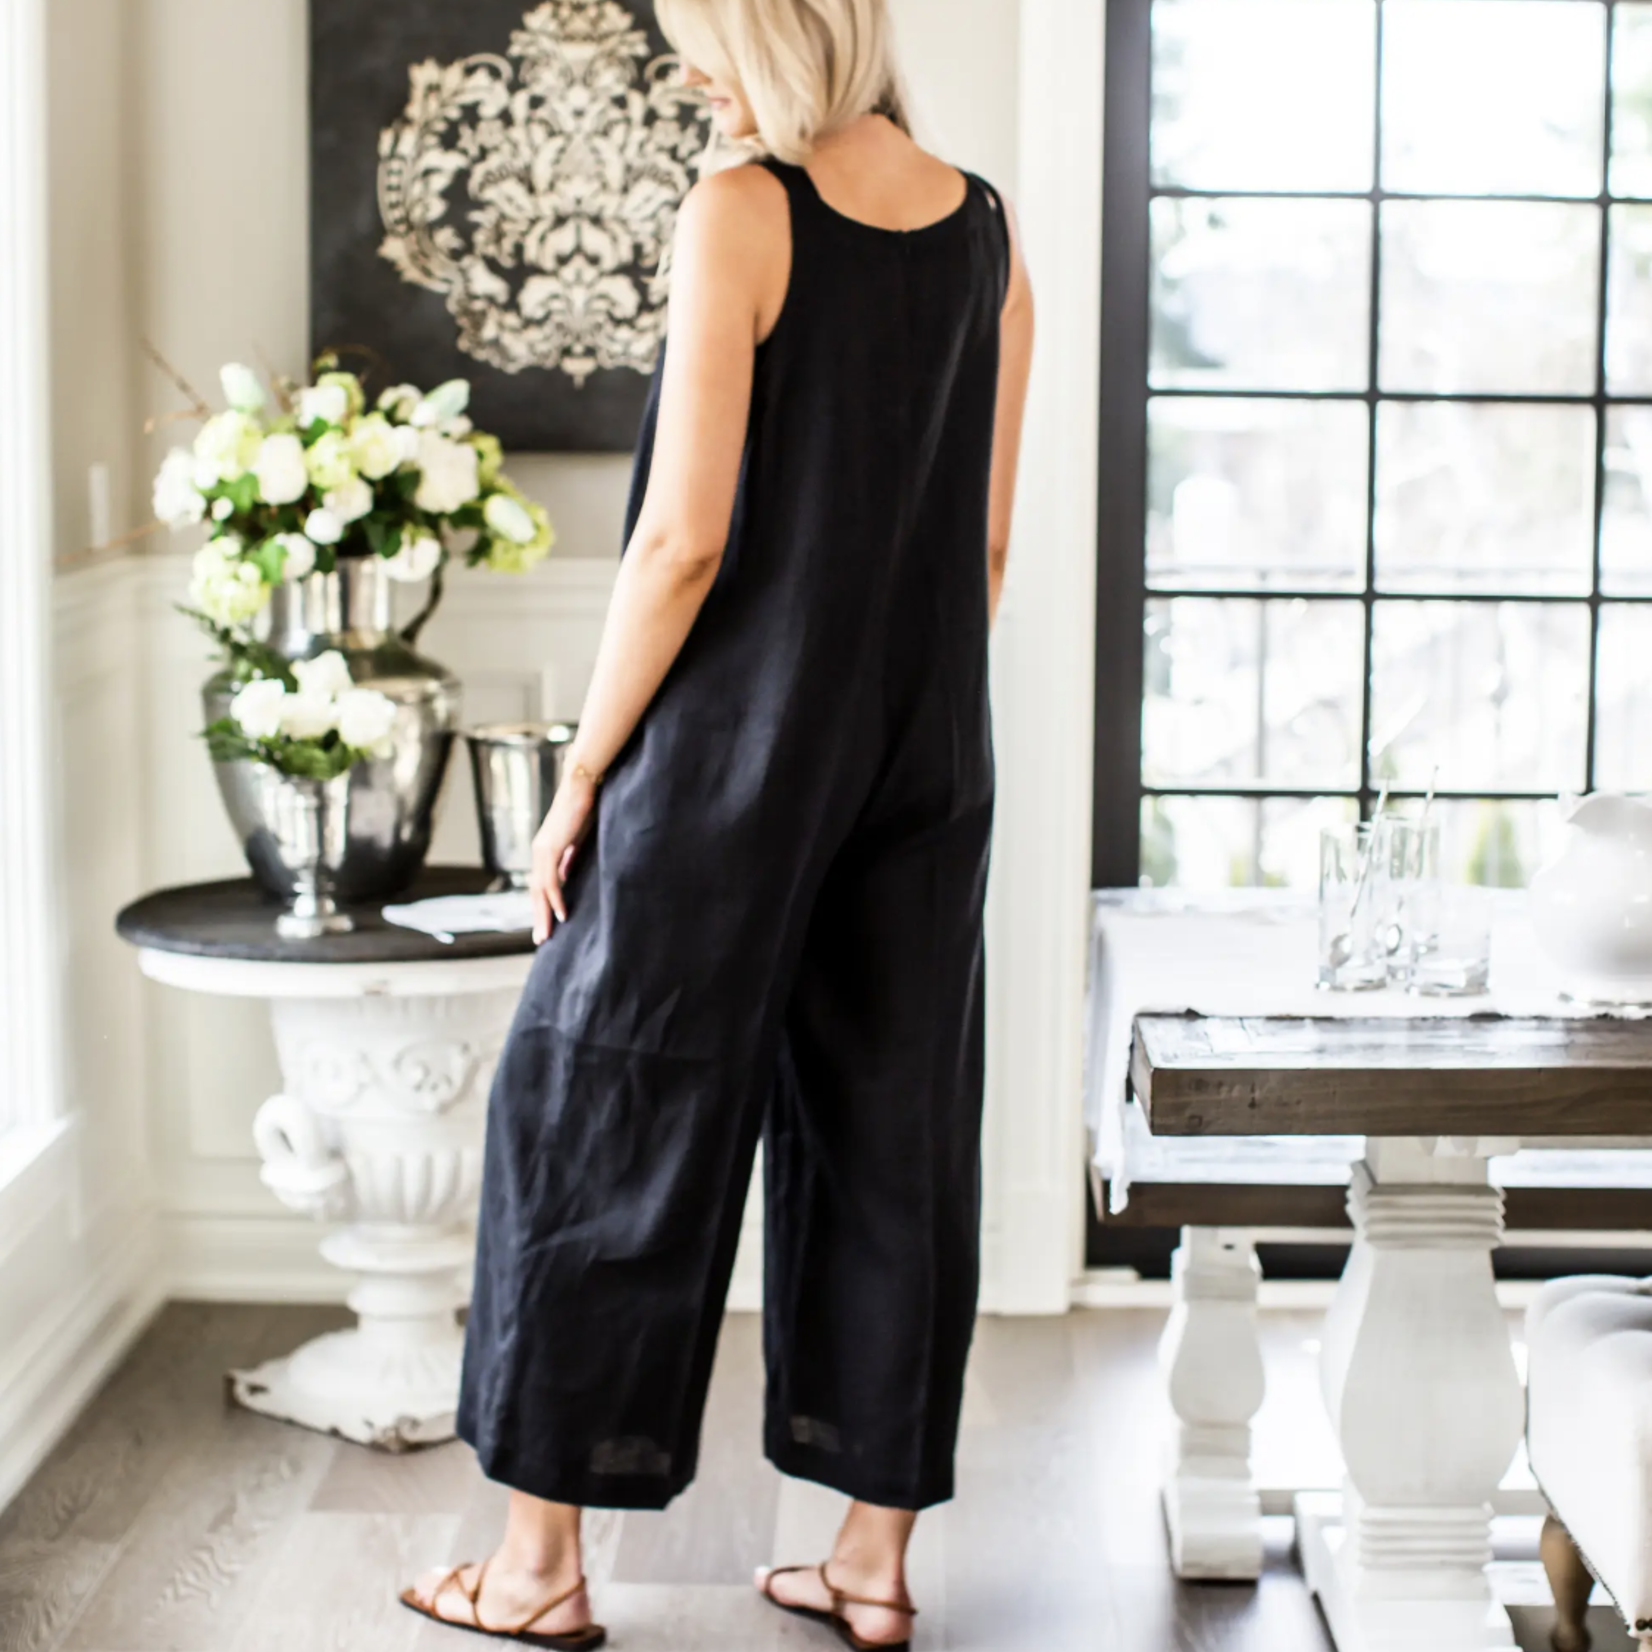 Crown Linen Designs Zoe Linen Jumpsuit Medium/Large Black